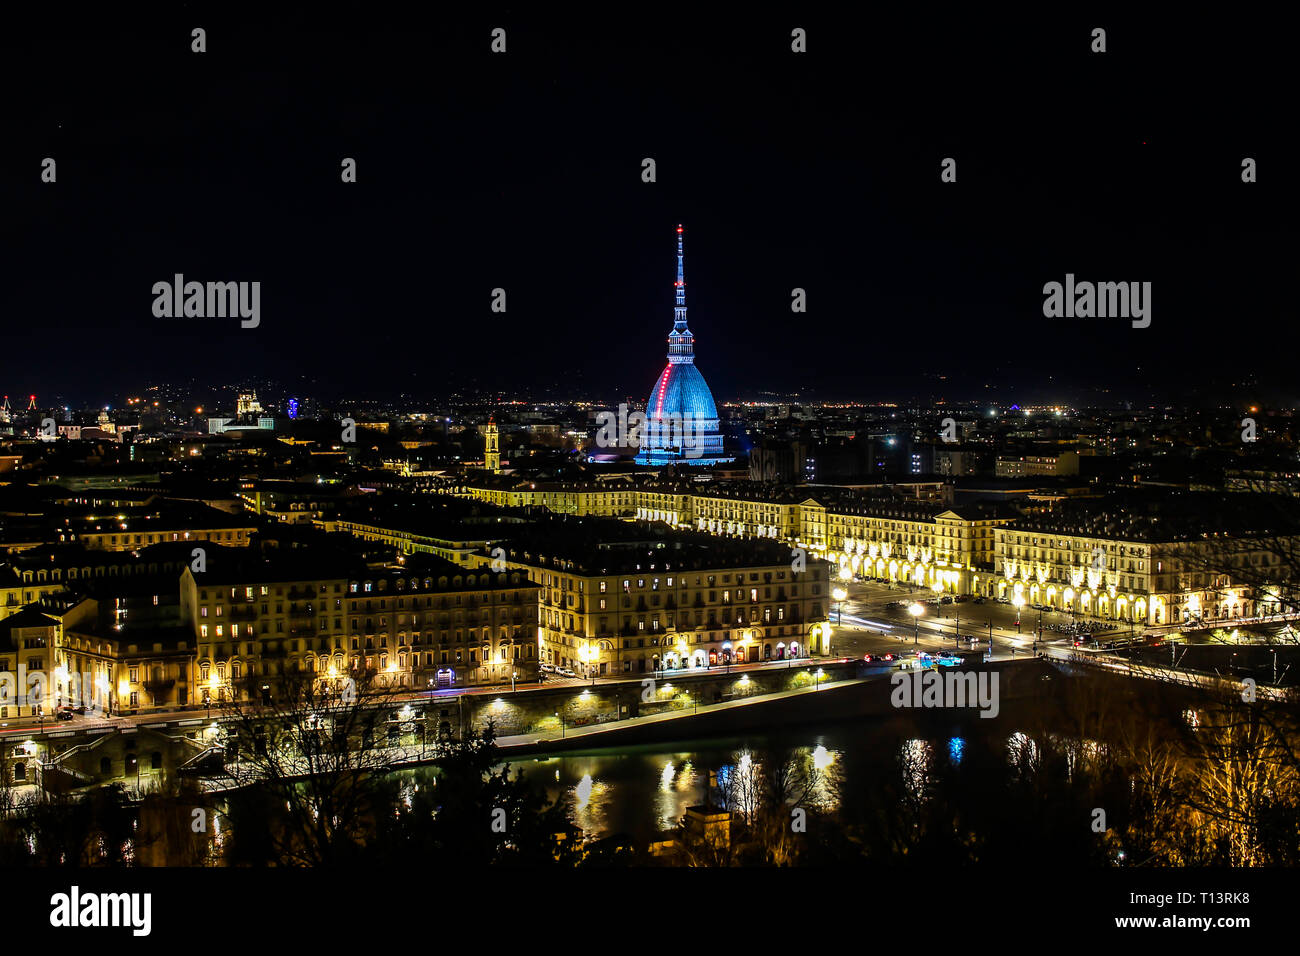 Vue panoramique de Turin par nuit Banque D'Images